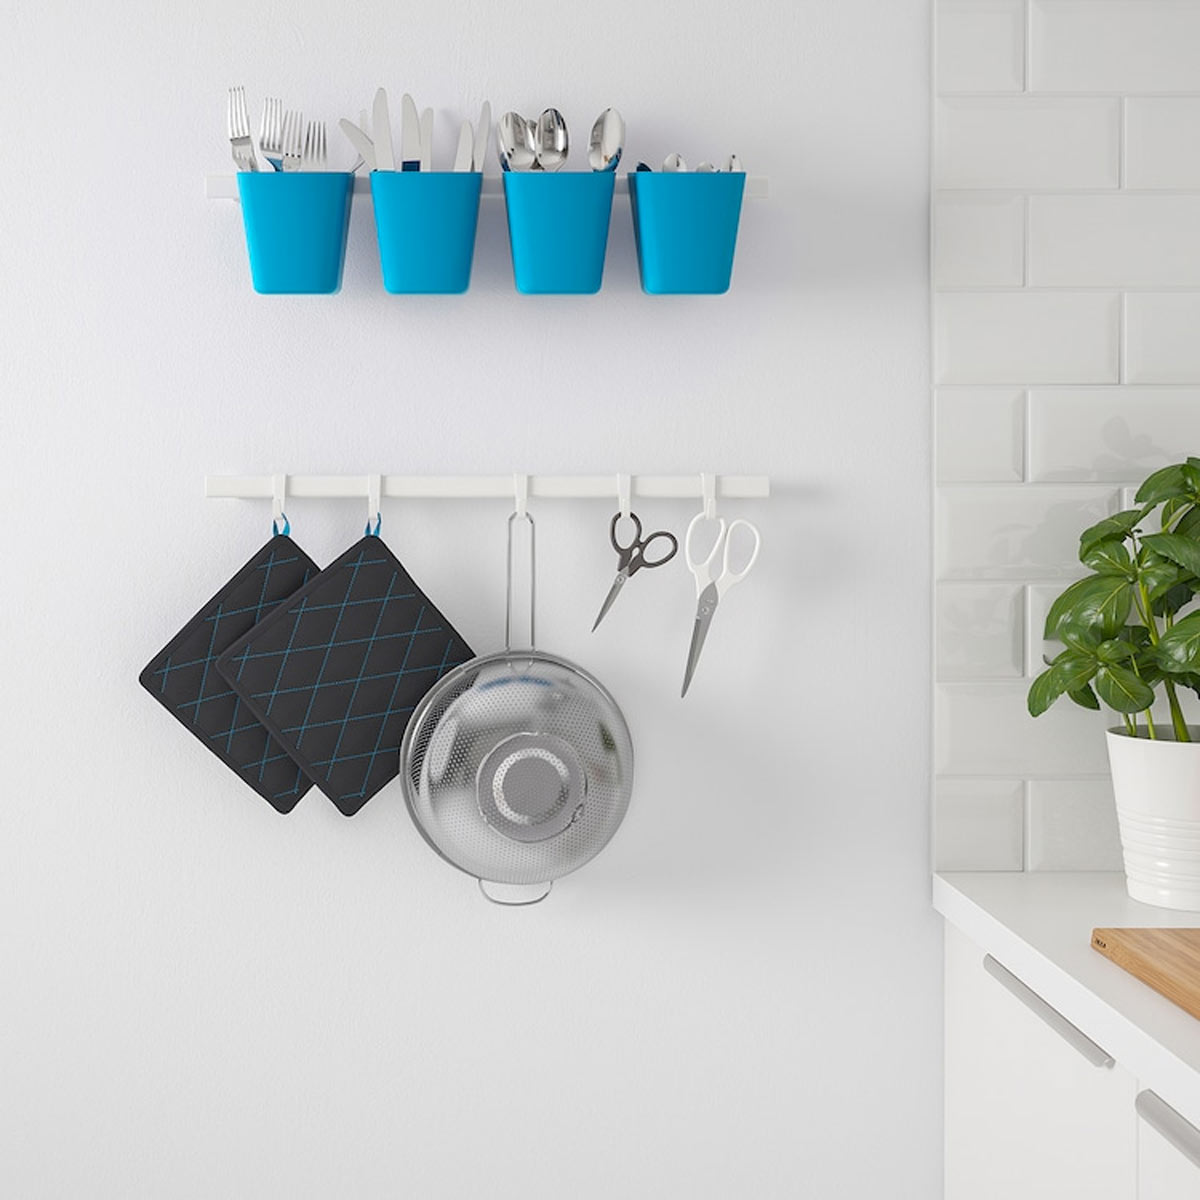 Offerte fine serie Ikea inizio 2022 accessori per la cucina.